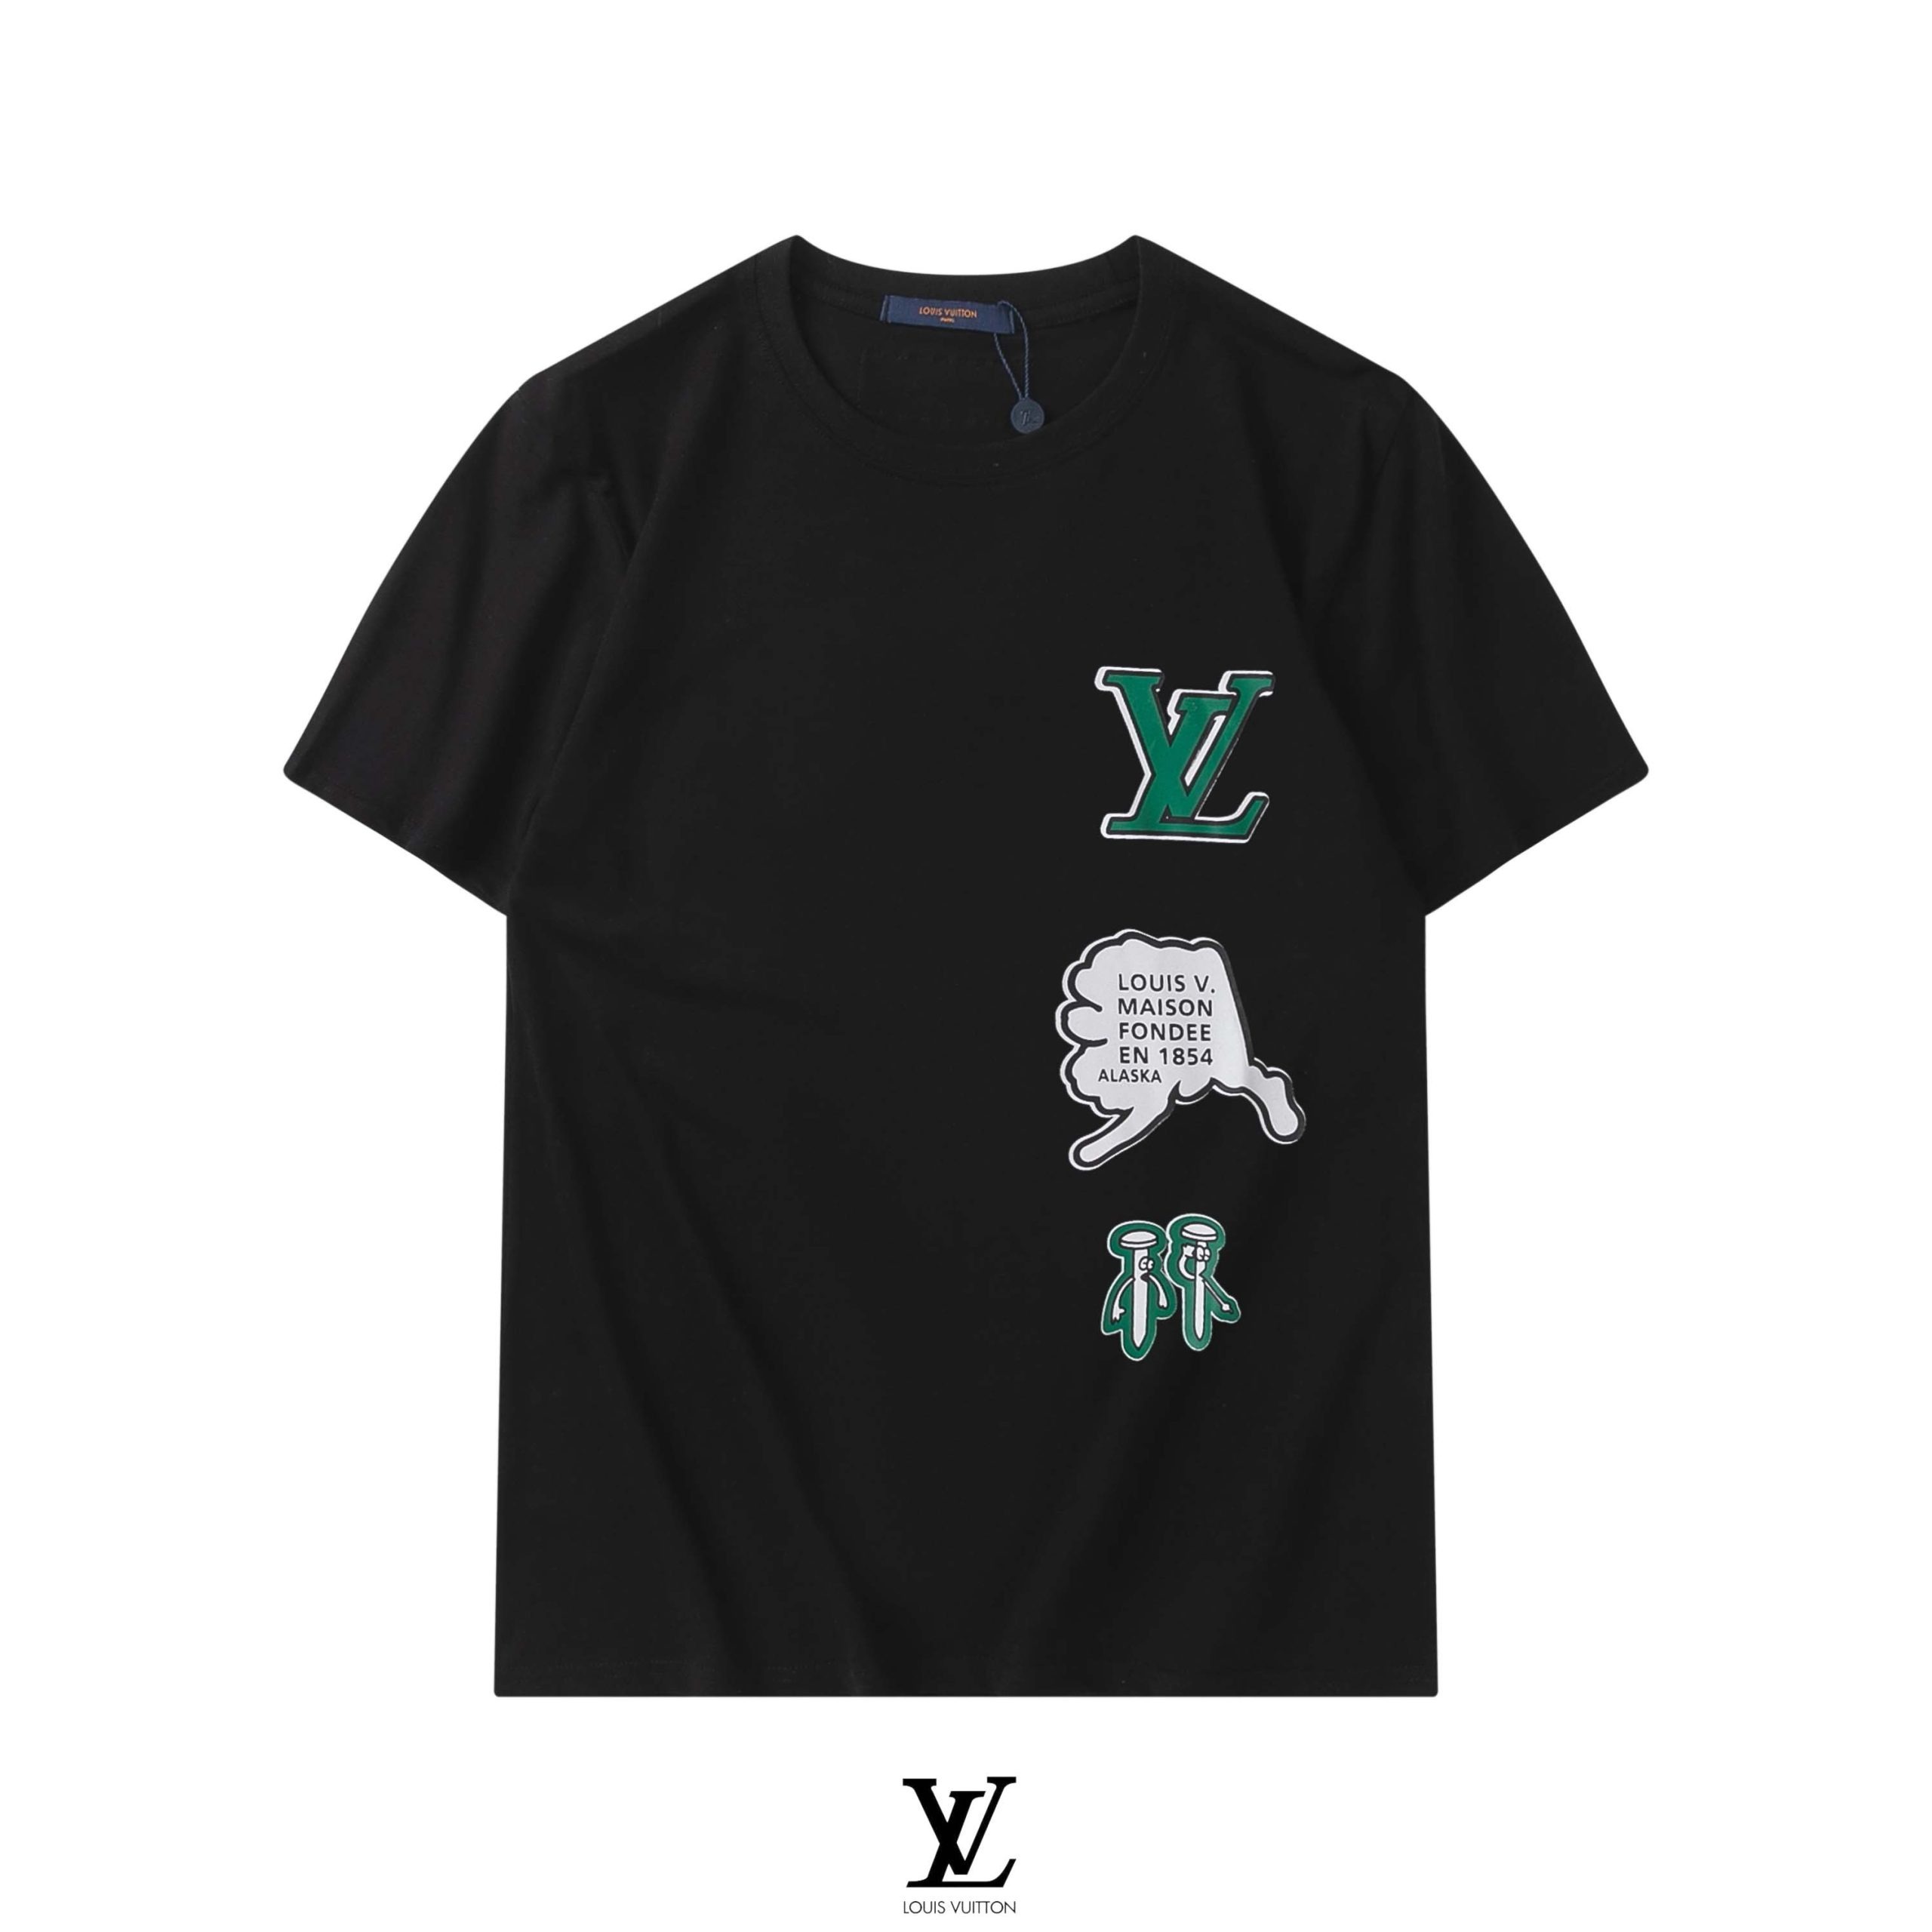  LV Louis Vuitton - Camiseta de manga corta (plástico, 1/16),  color negro : Todo lo demás